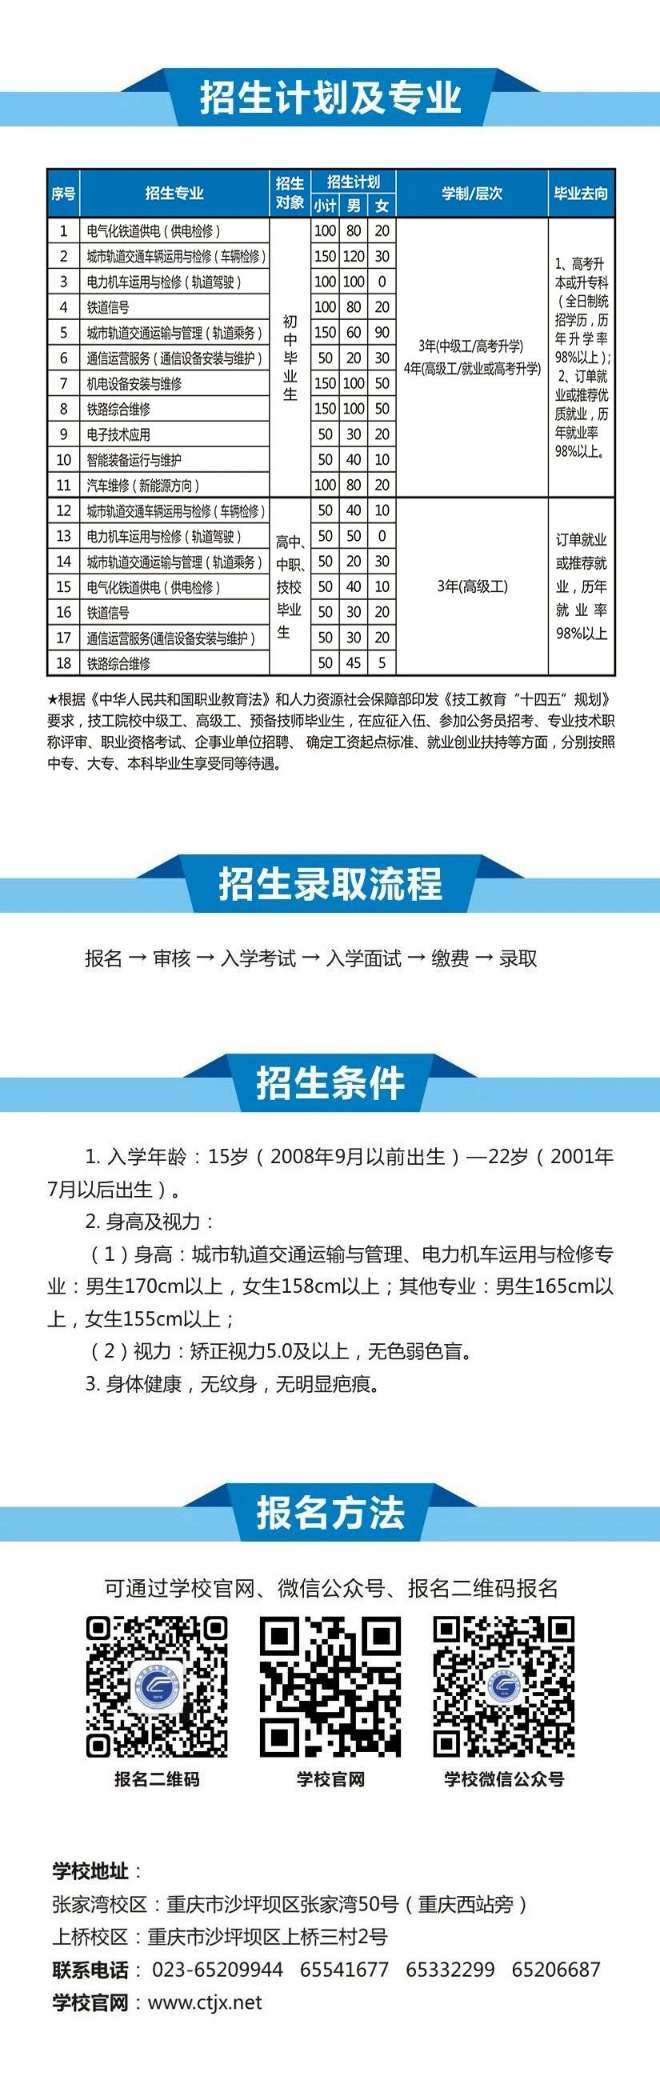 重庆铁路运输技师学院招生简章